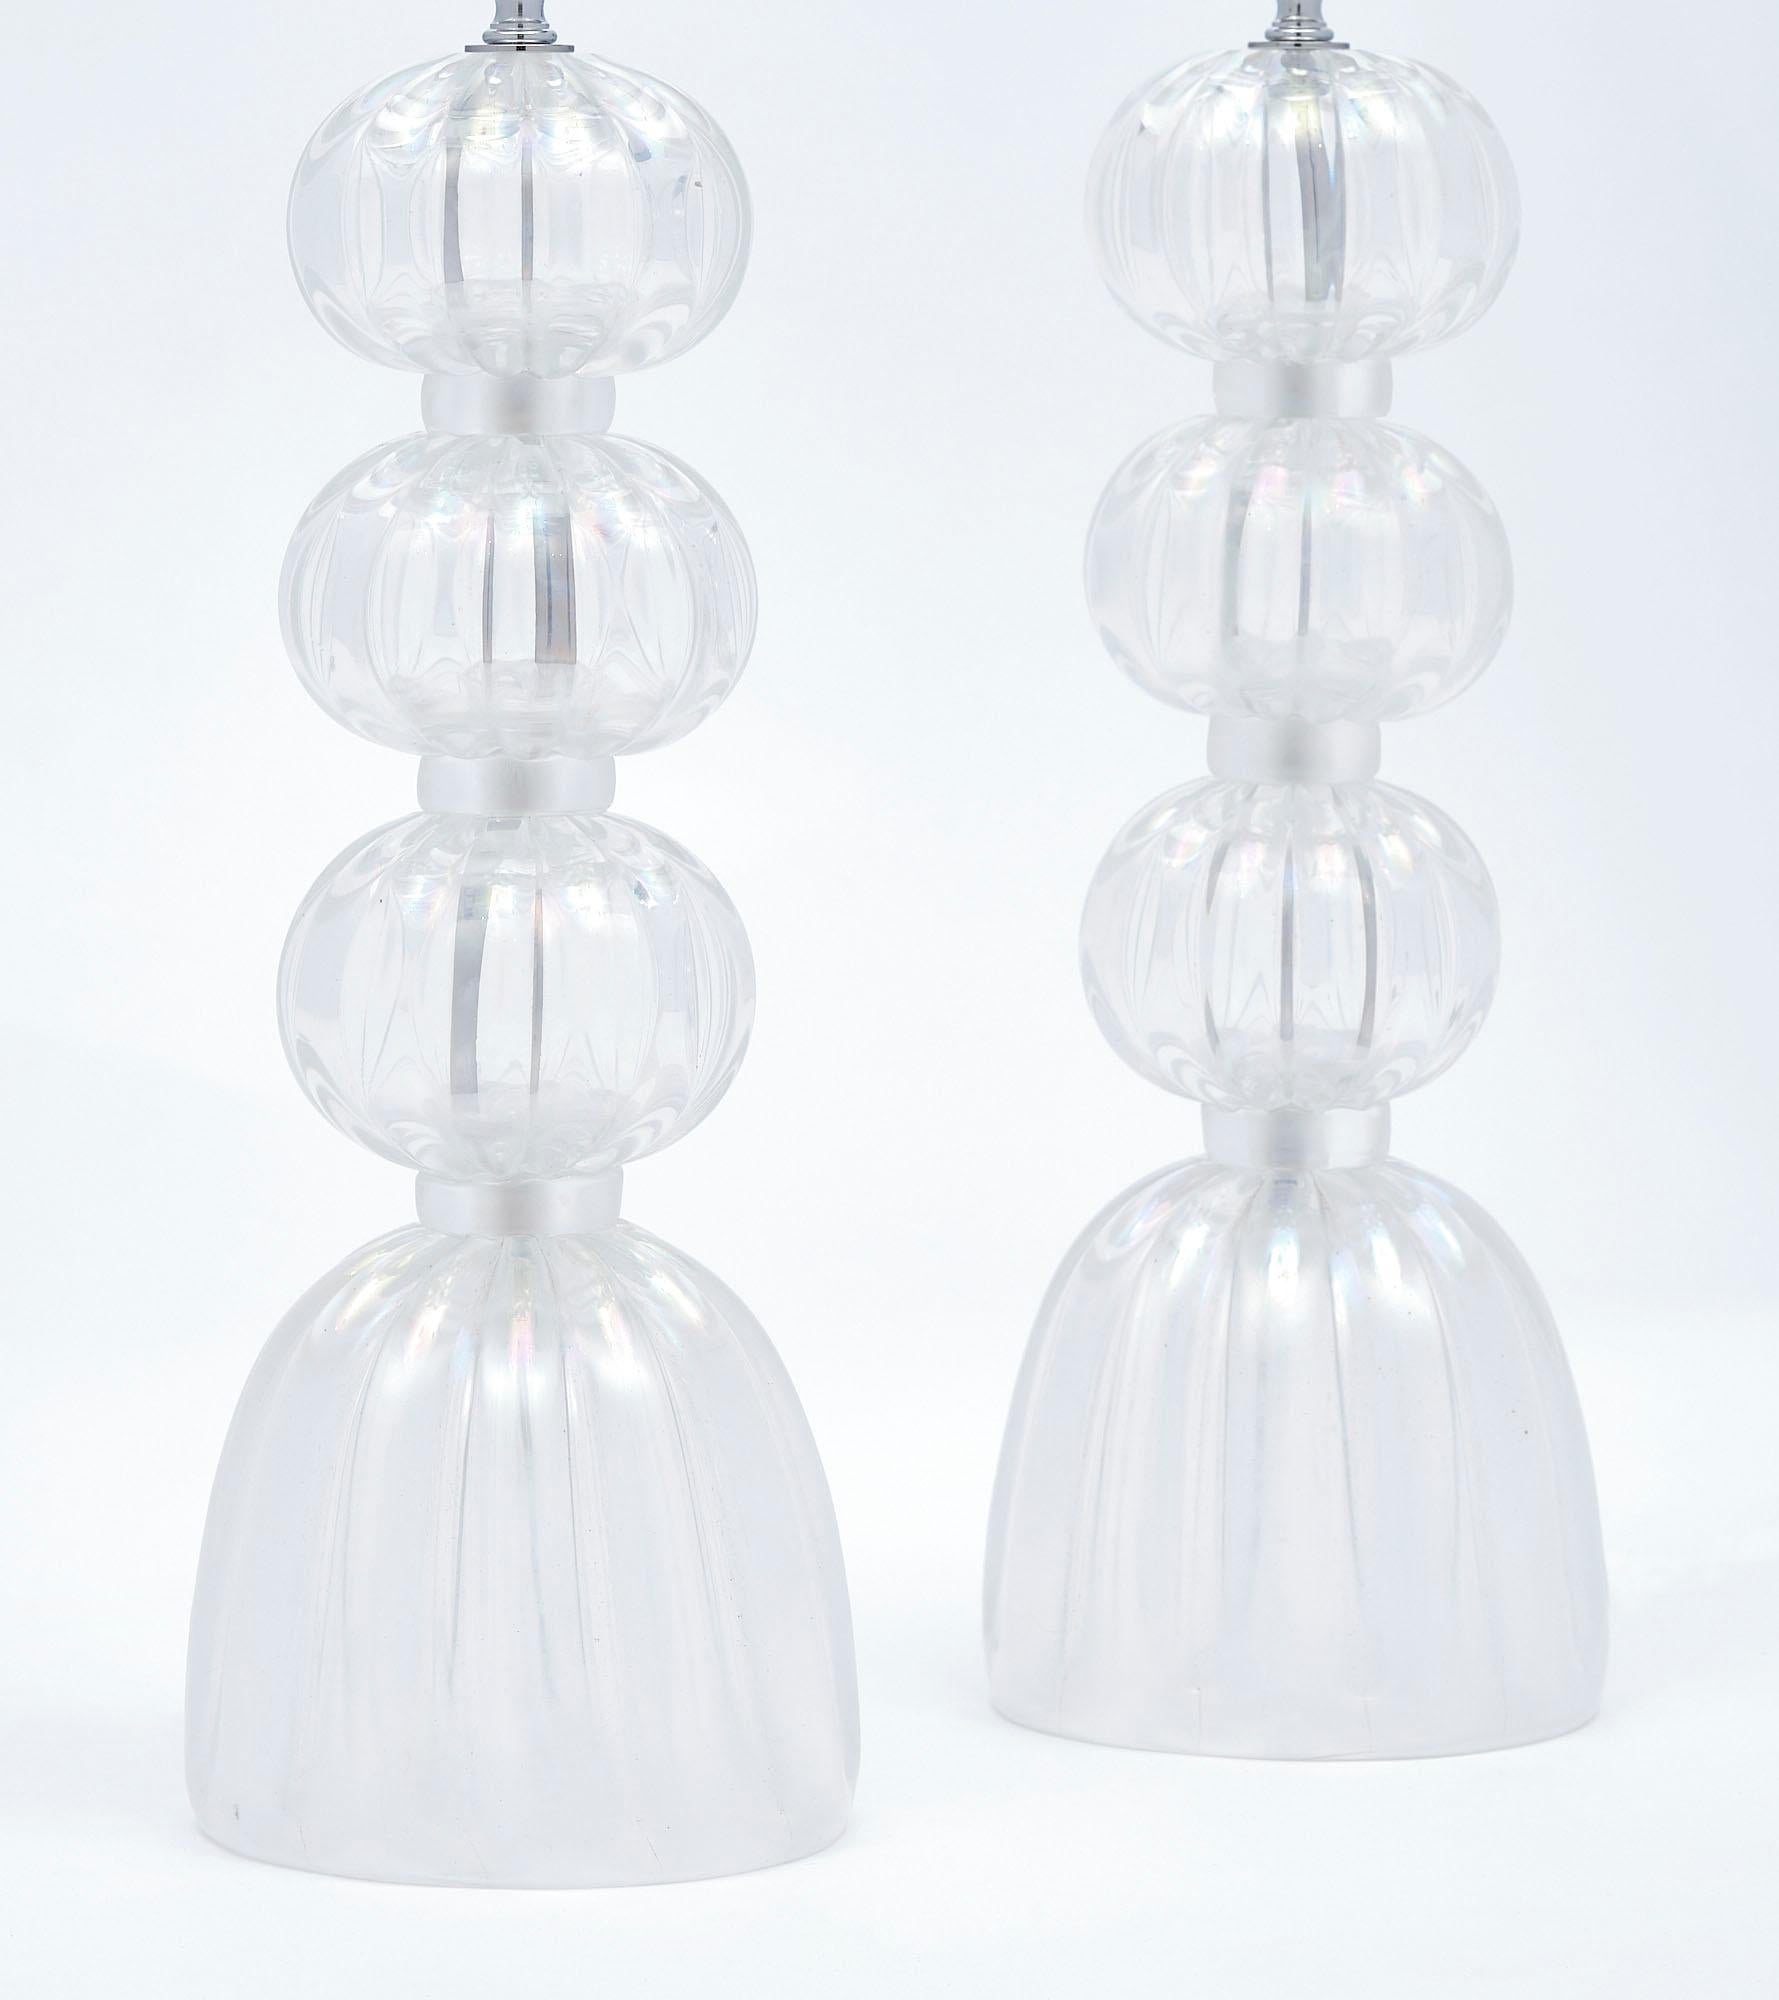 Paar Lampen, italienisch, von der Insel Murano, aus klaren Glaskugeln und Sockel mit einem schillernden Ton. Das von der Glasoberfläche reflektierte Licht spiegelt sich in den Farben des Regenbogens wider. Man erhält es, indem man die laufende